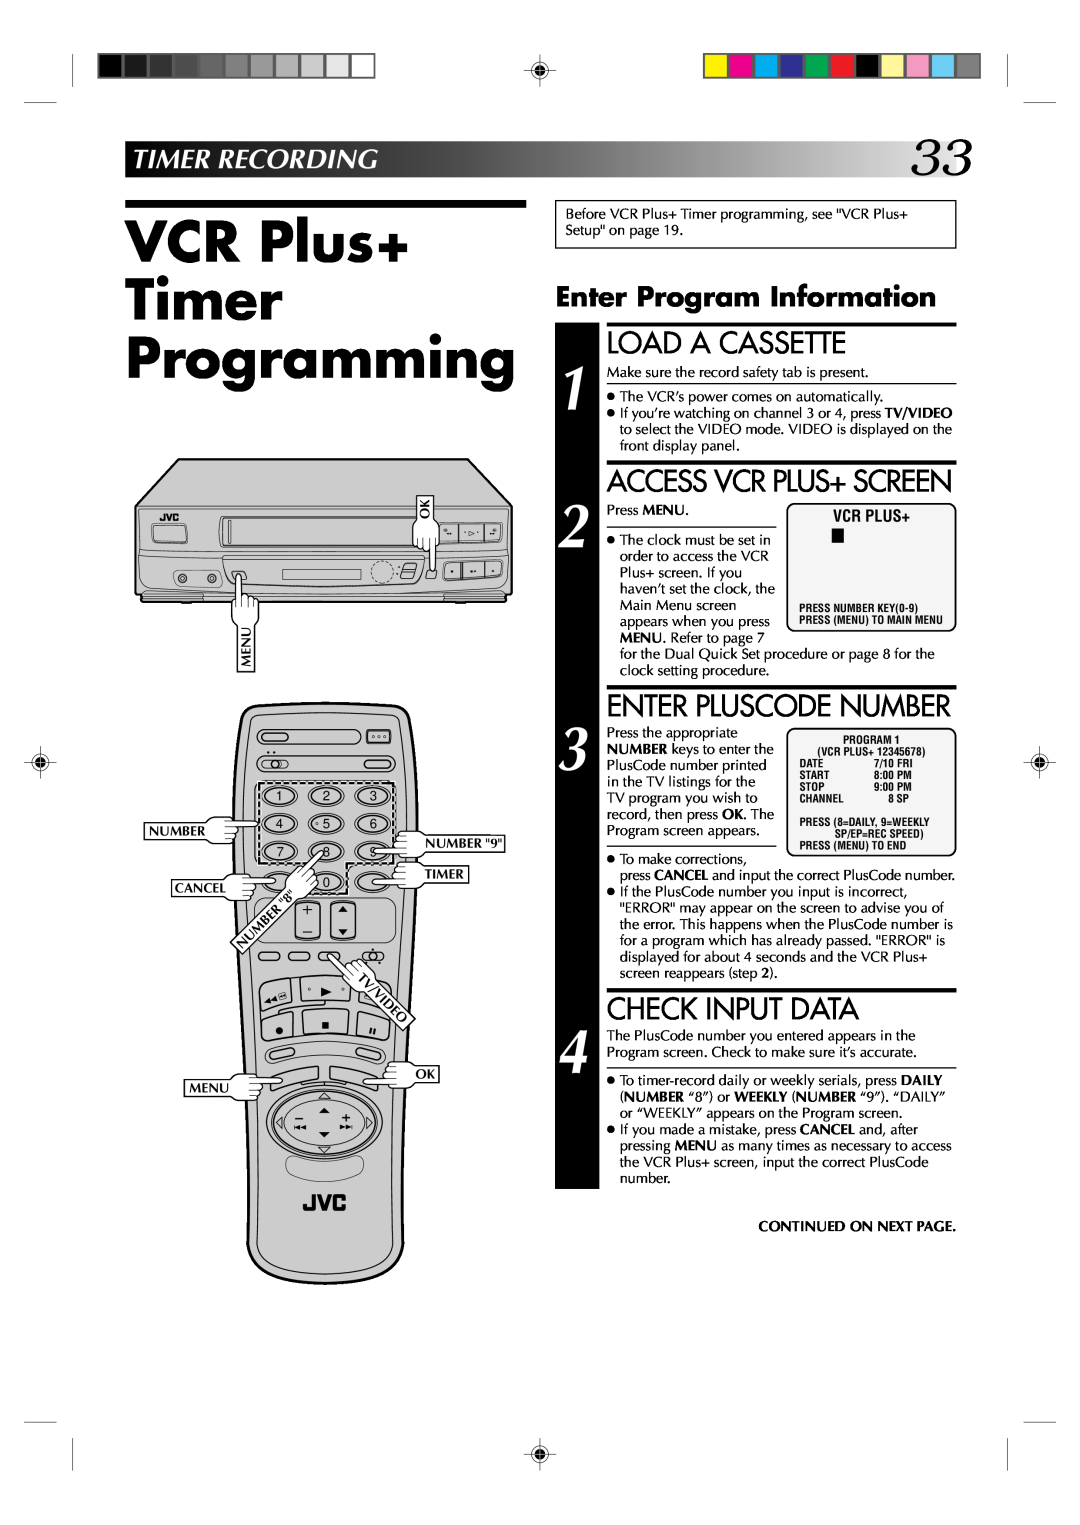 JVC HR-VP434U VCR Plus+ Timer Programming, Check Input Data, Timerrecording, Enter Program Information, Load A Cassette 